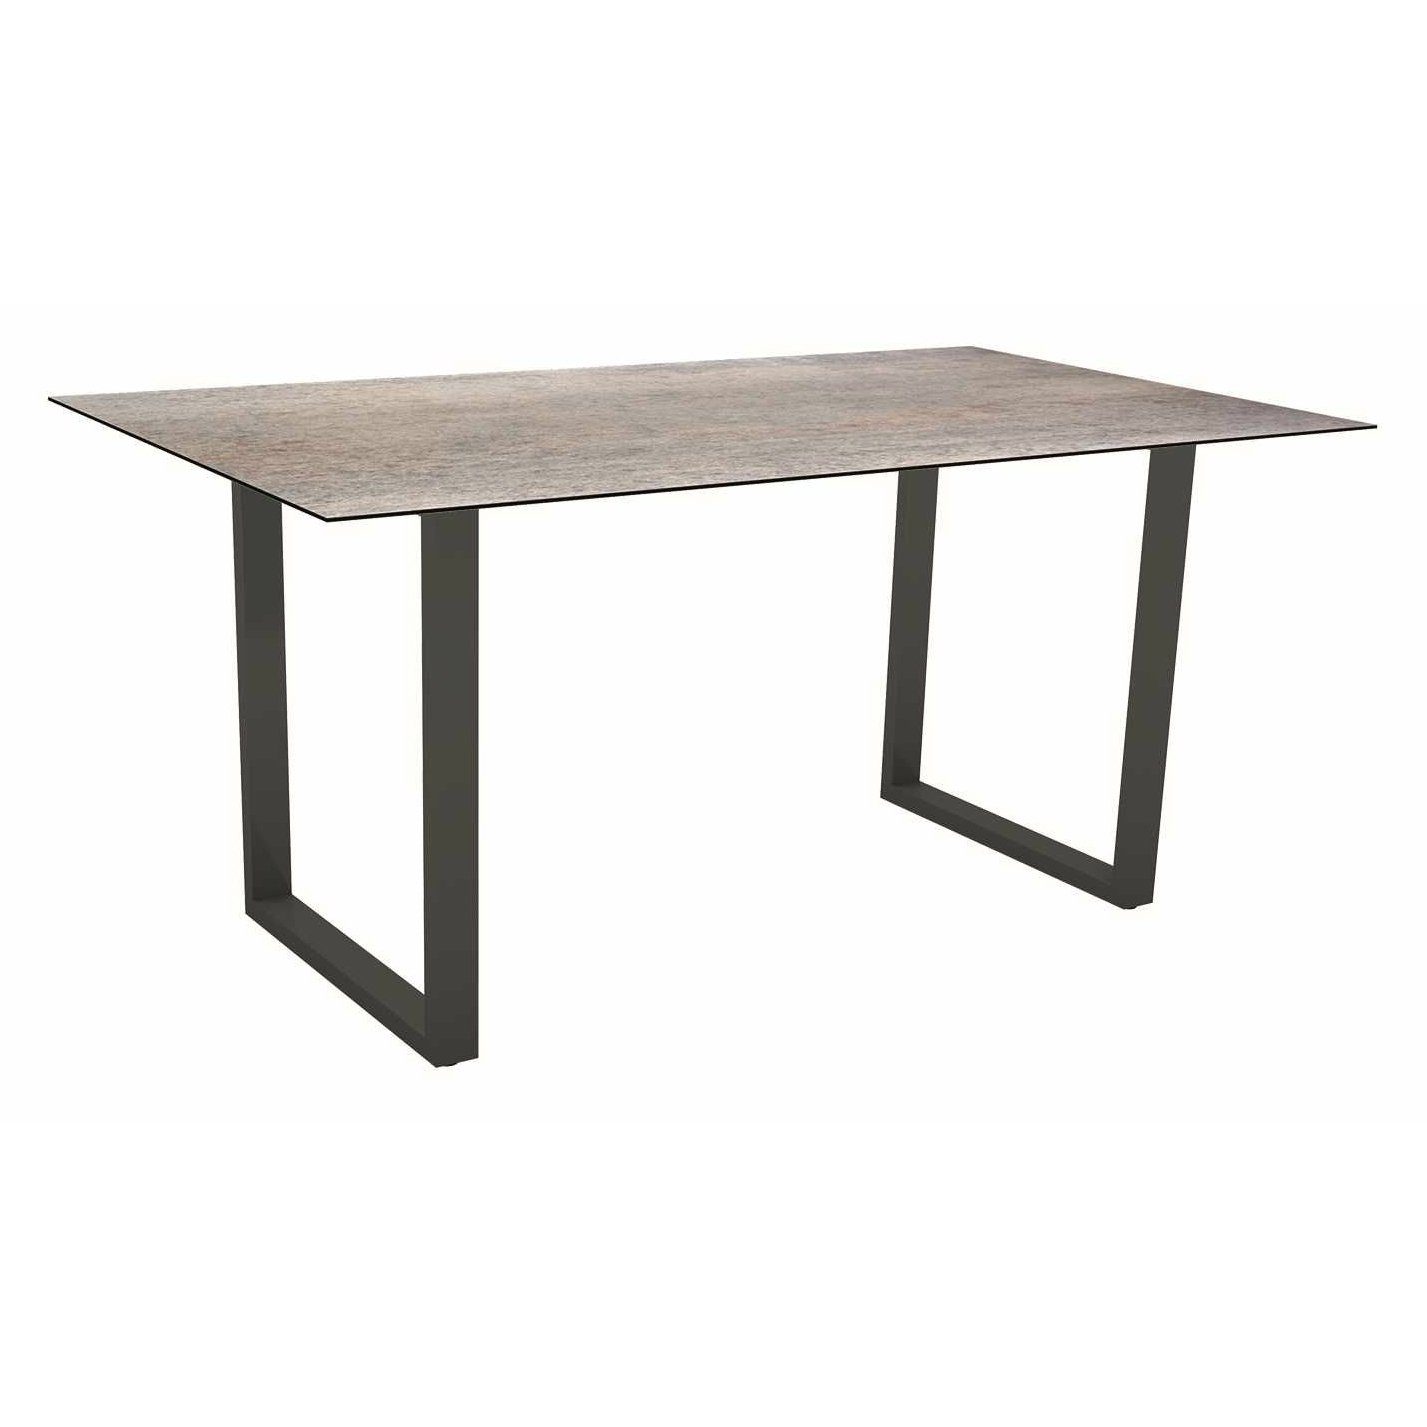 Stern Kufentisch, Gestell Aluminium anthrazit, Tischplatte HPL Smoky, Tischgröße: 160x90 cm